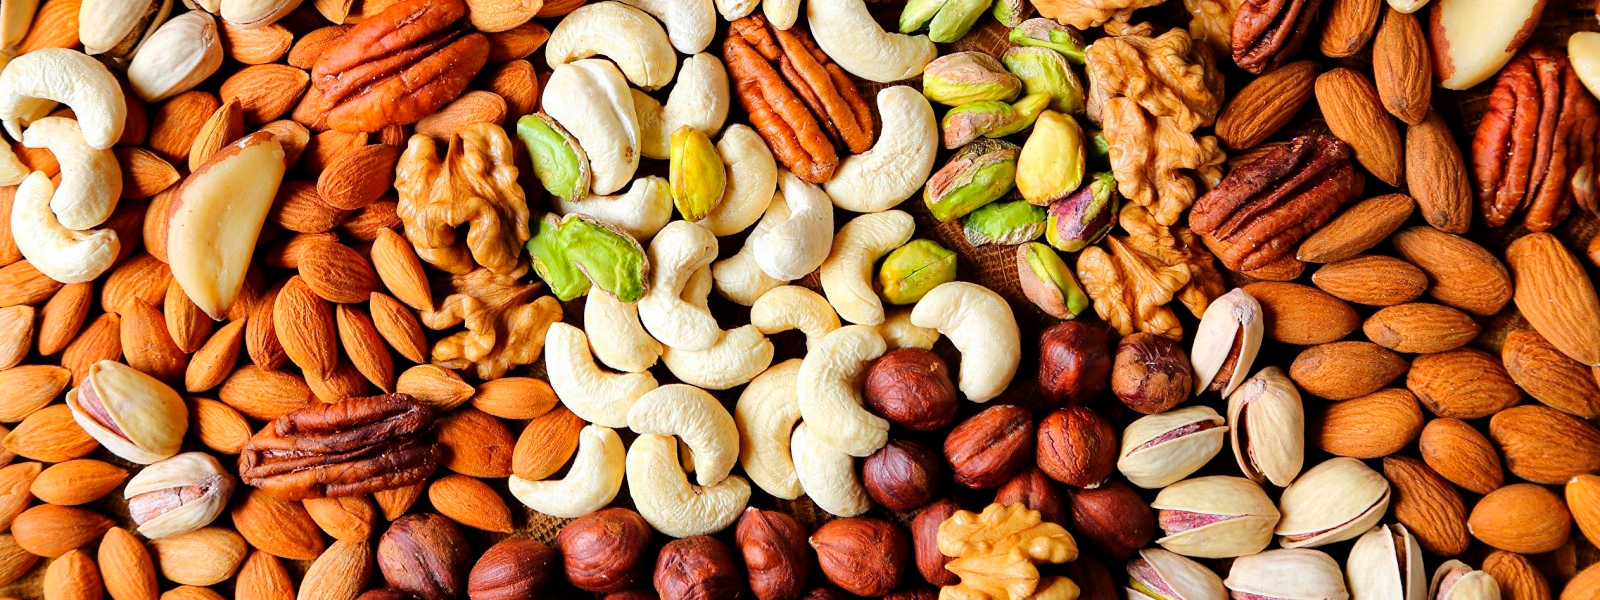 banner-carino-ingredientes-nueces-cacahuetes-almendras-brasileñas-avellanas